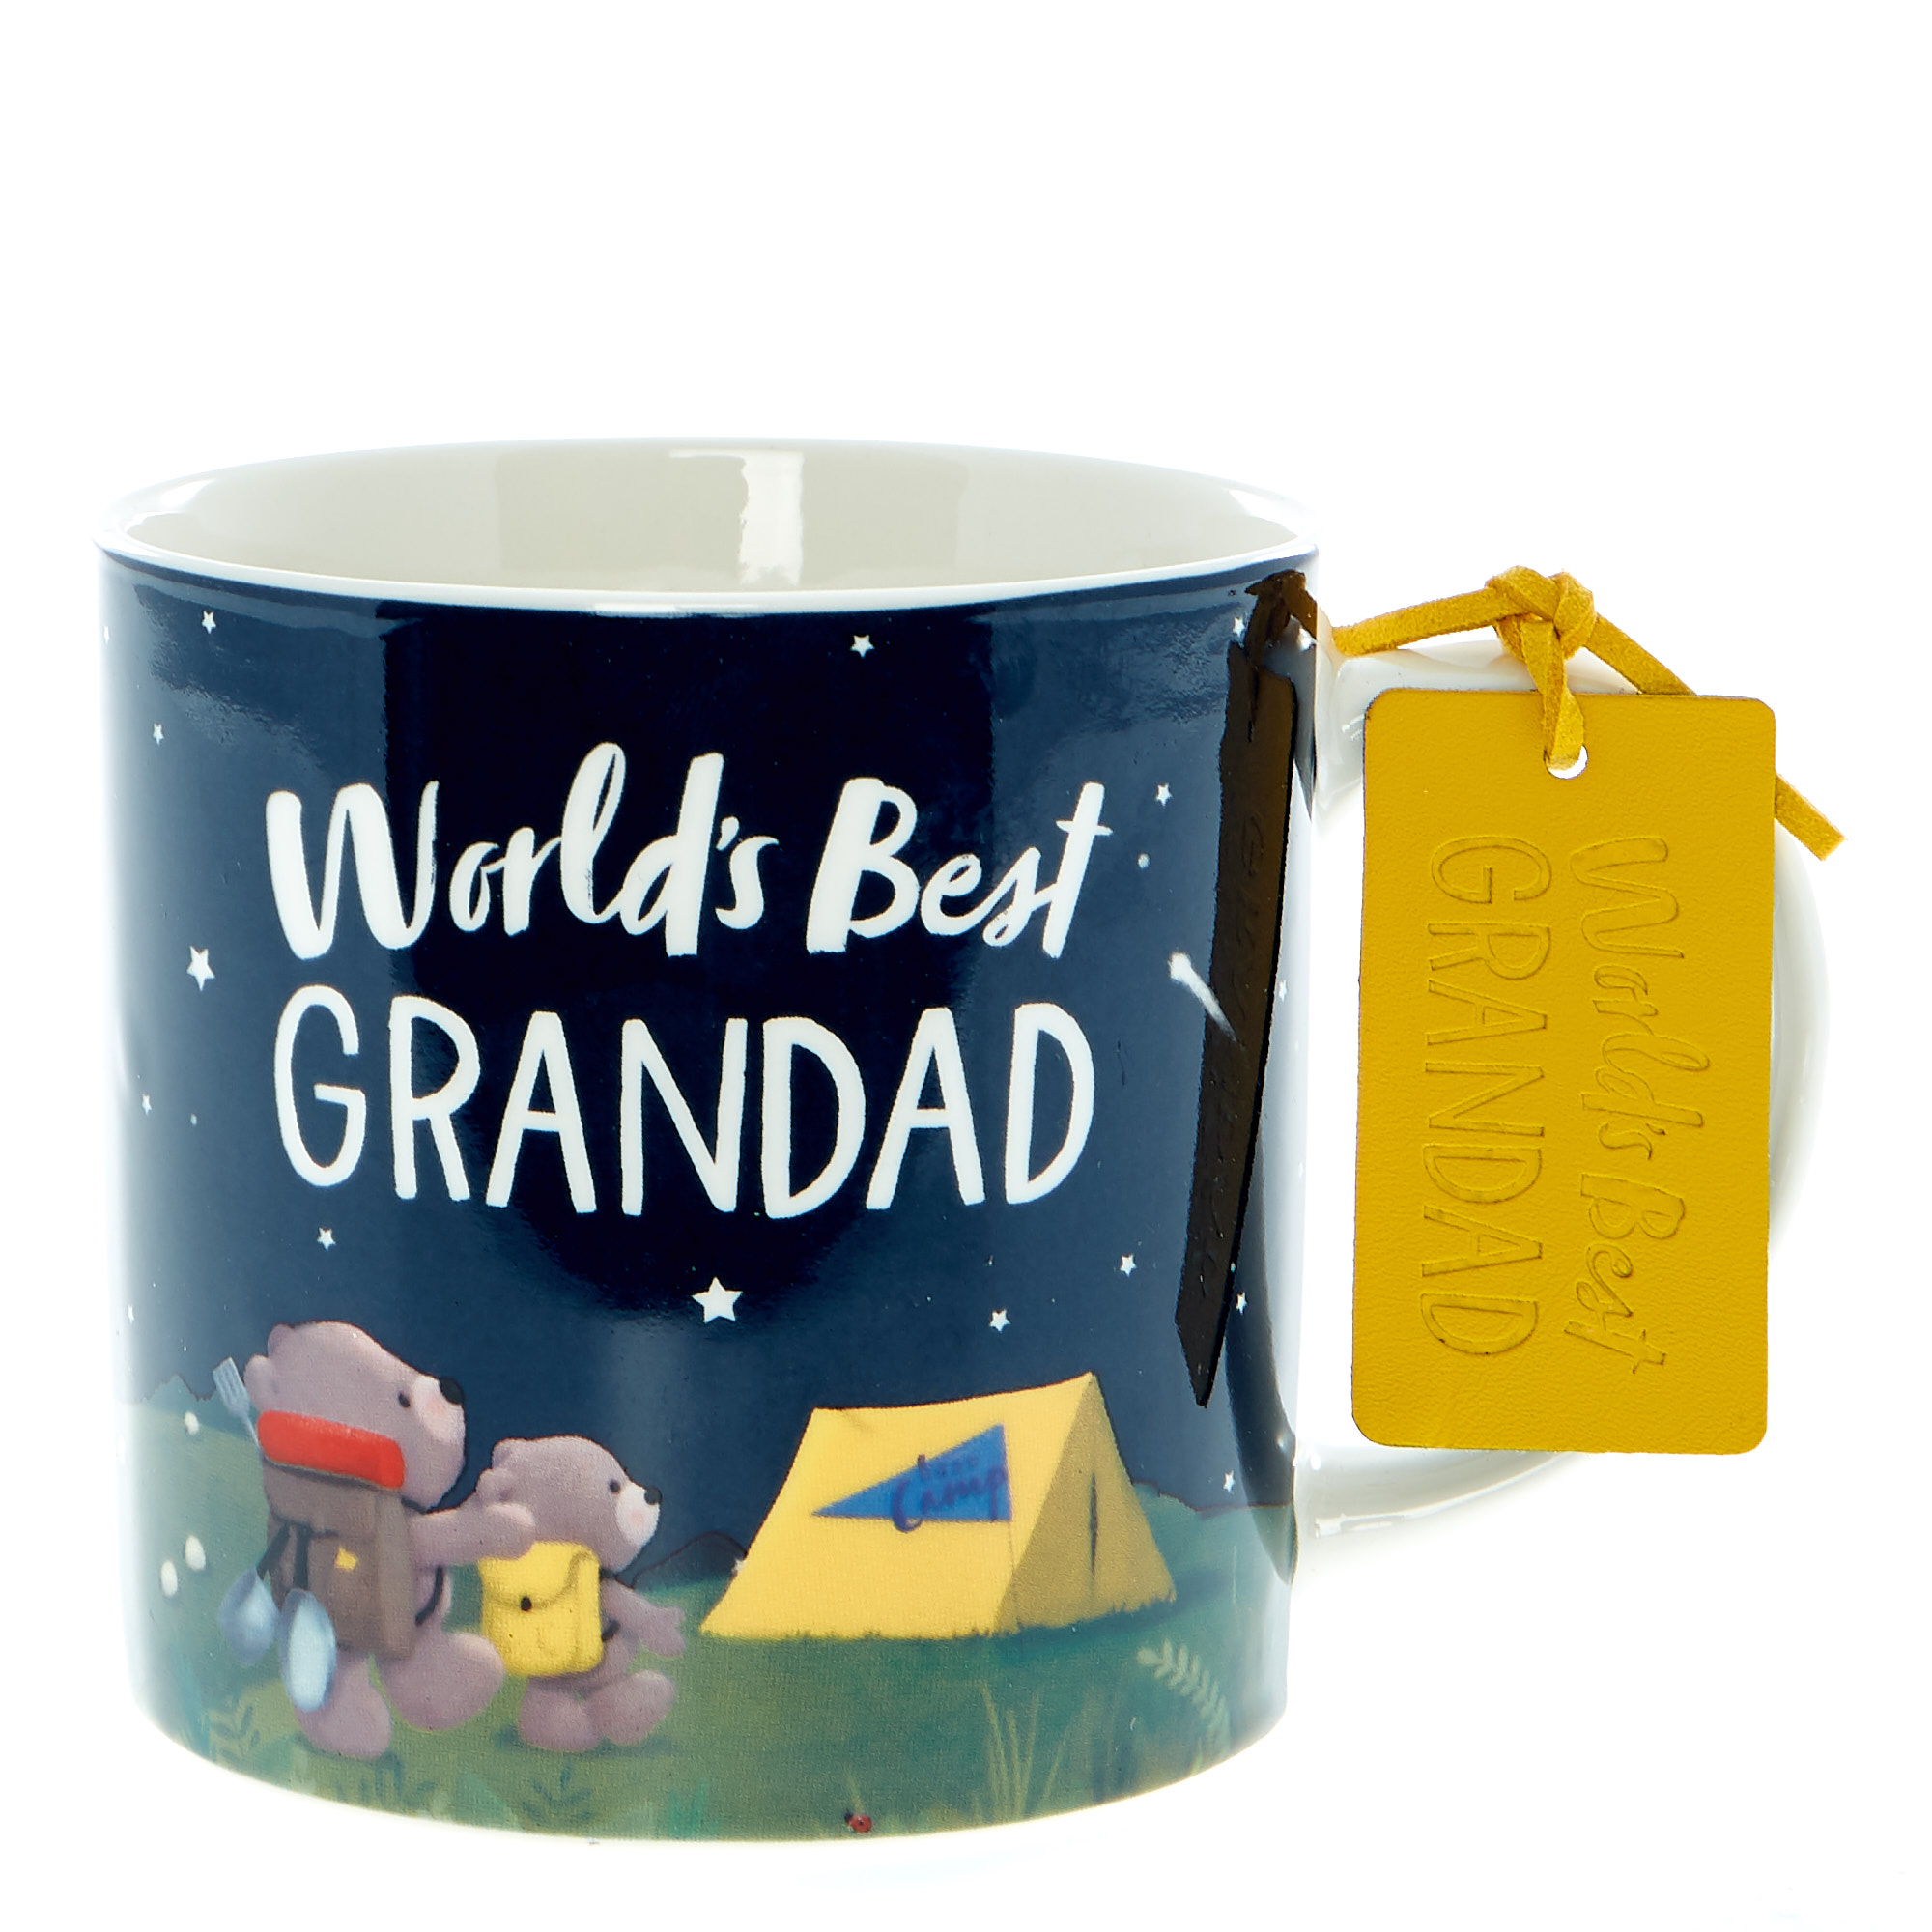  World's Best Grandad Hugs Mug & Socks Set